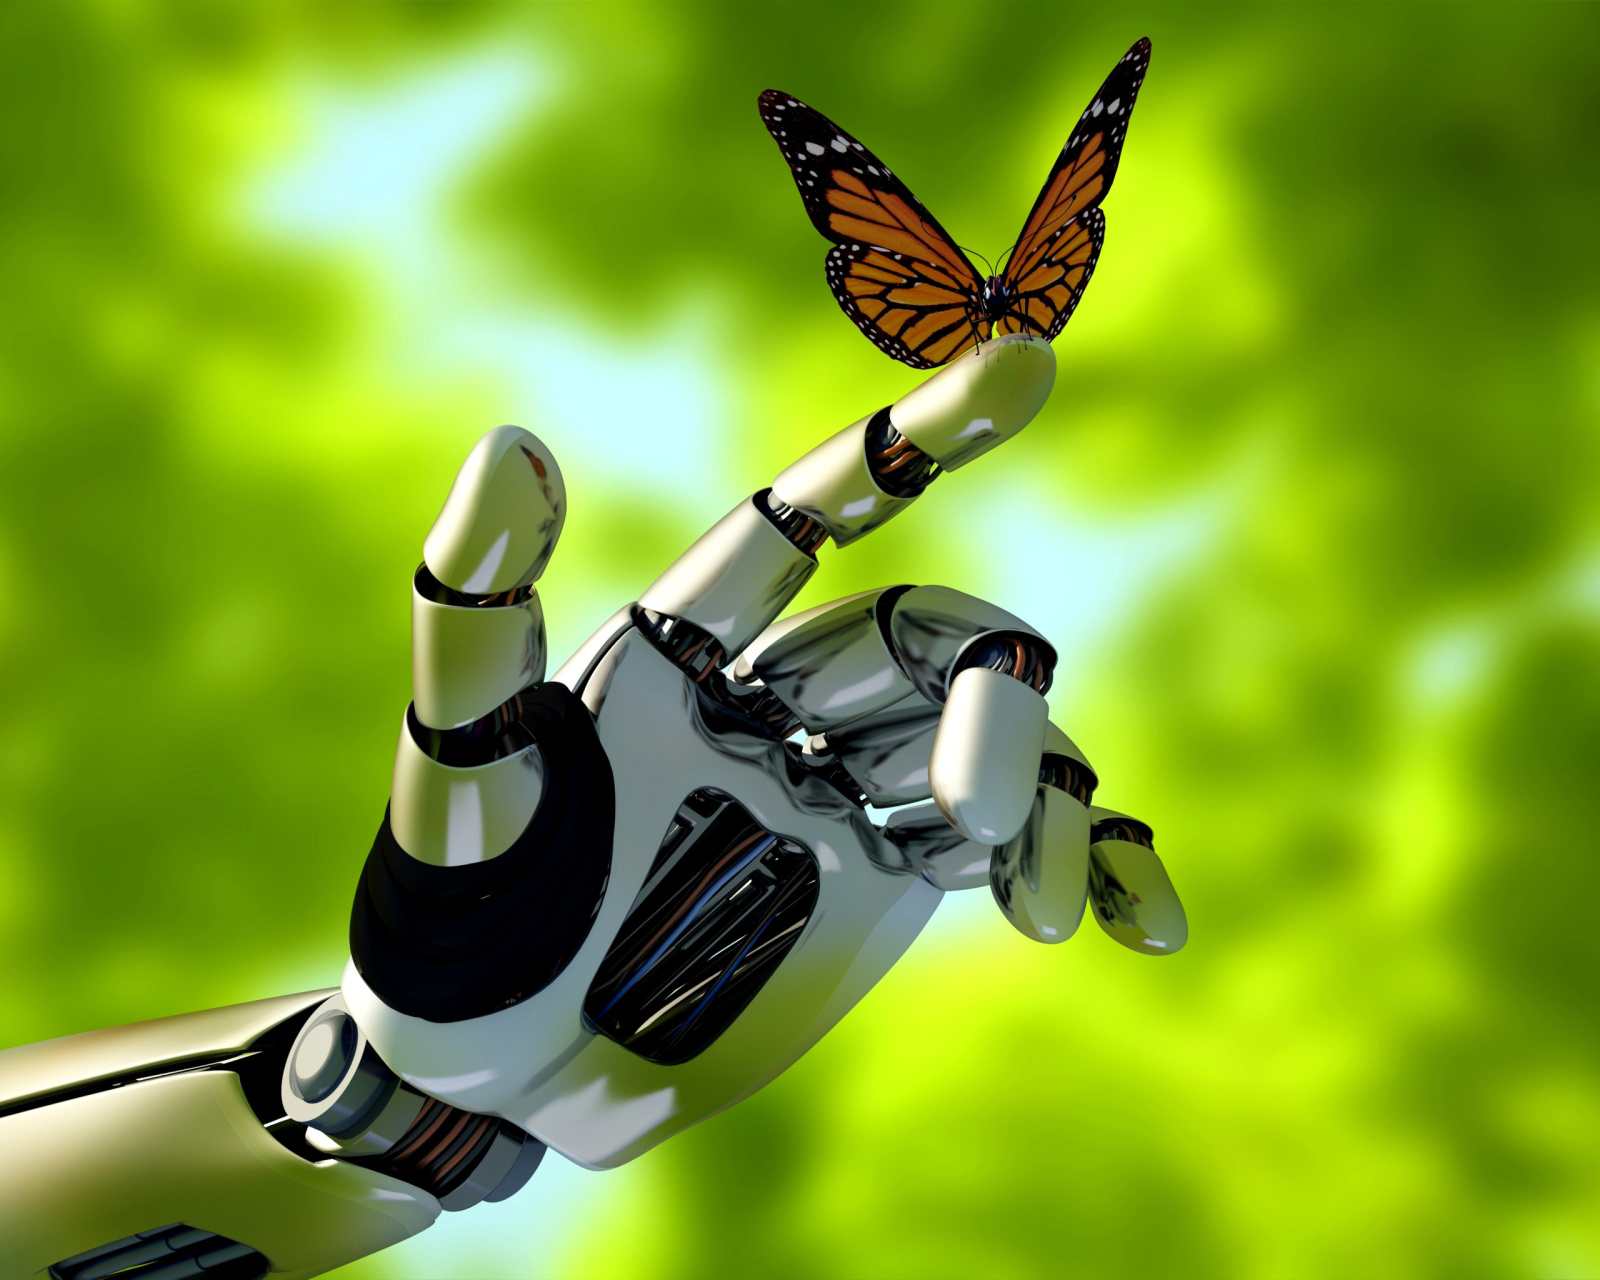 Robot hand and butterfly screenshot #1 1600x1280